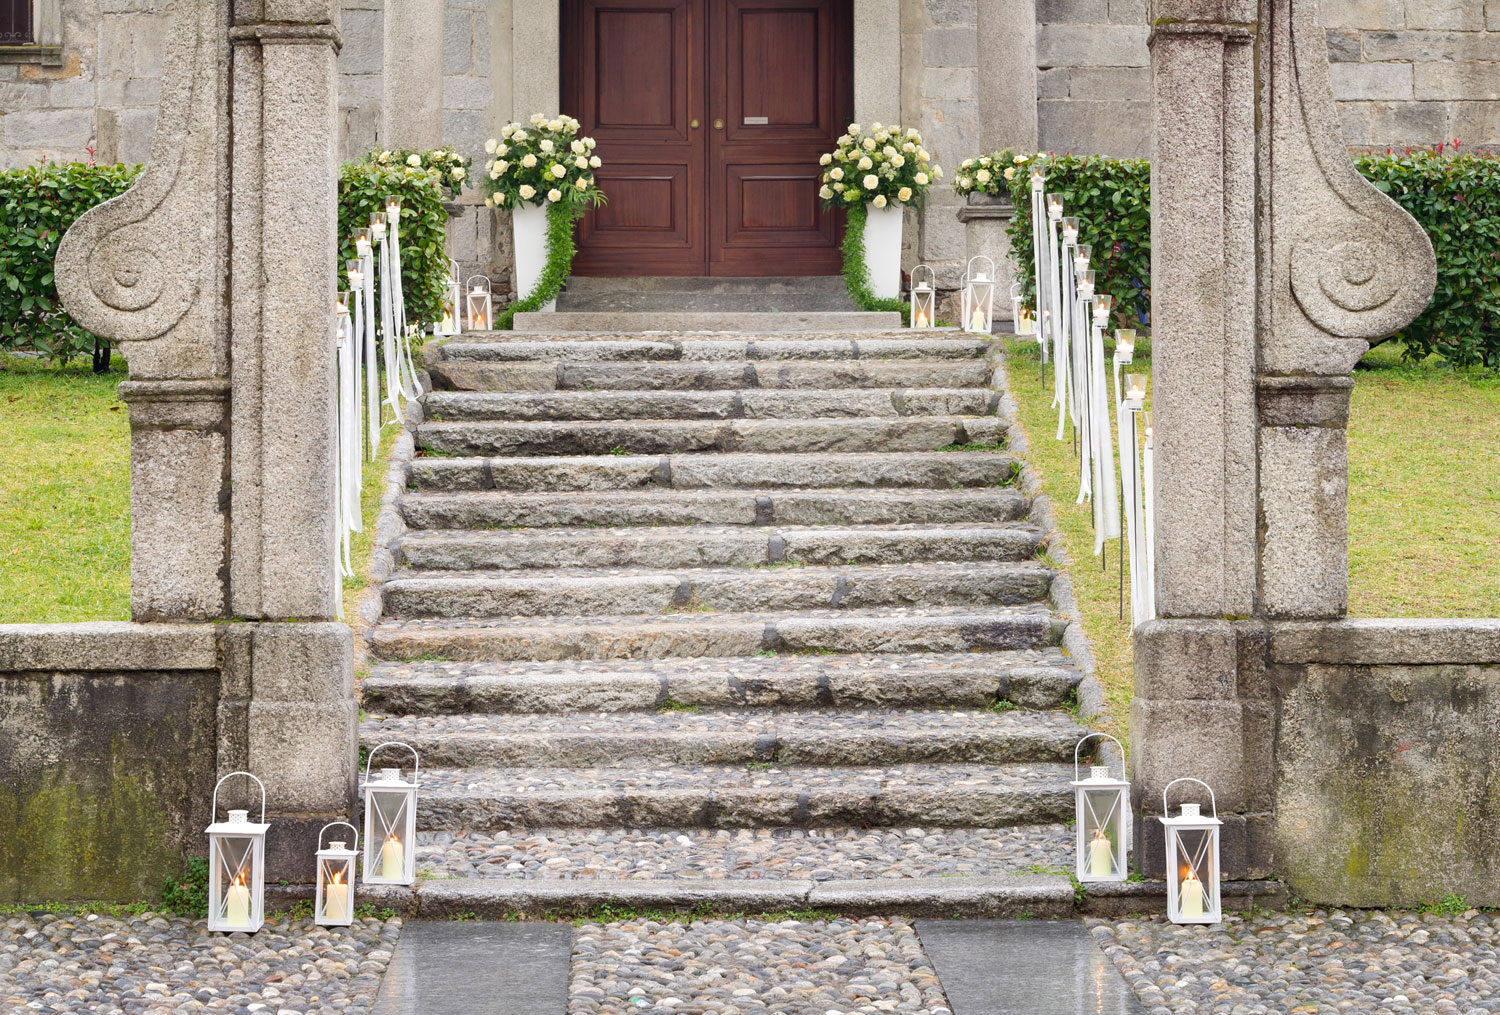 Fiorista Per Matrimonio In Chiesa Sul Lago Maggiore